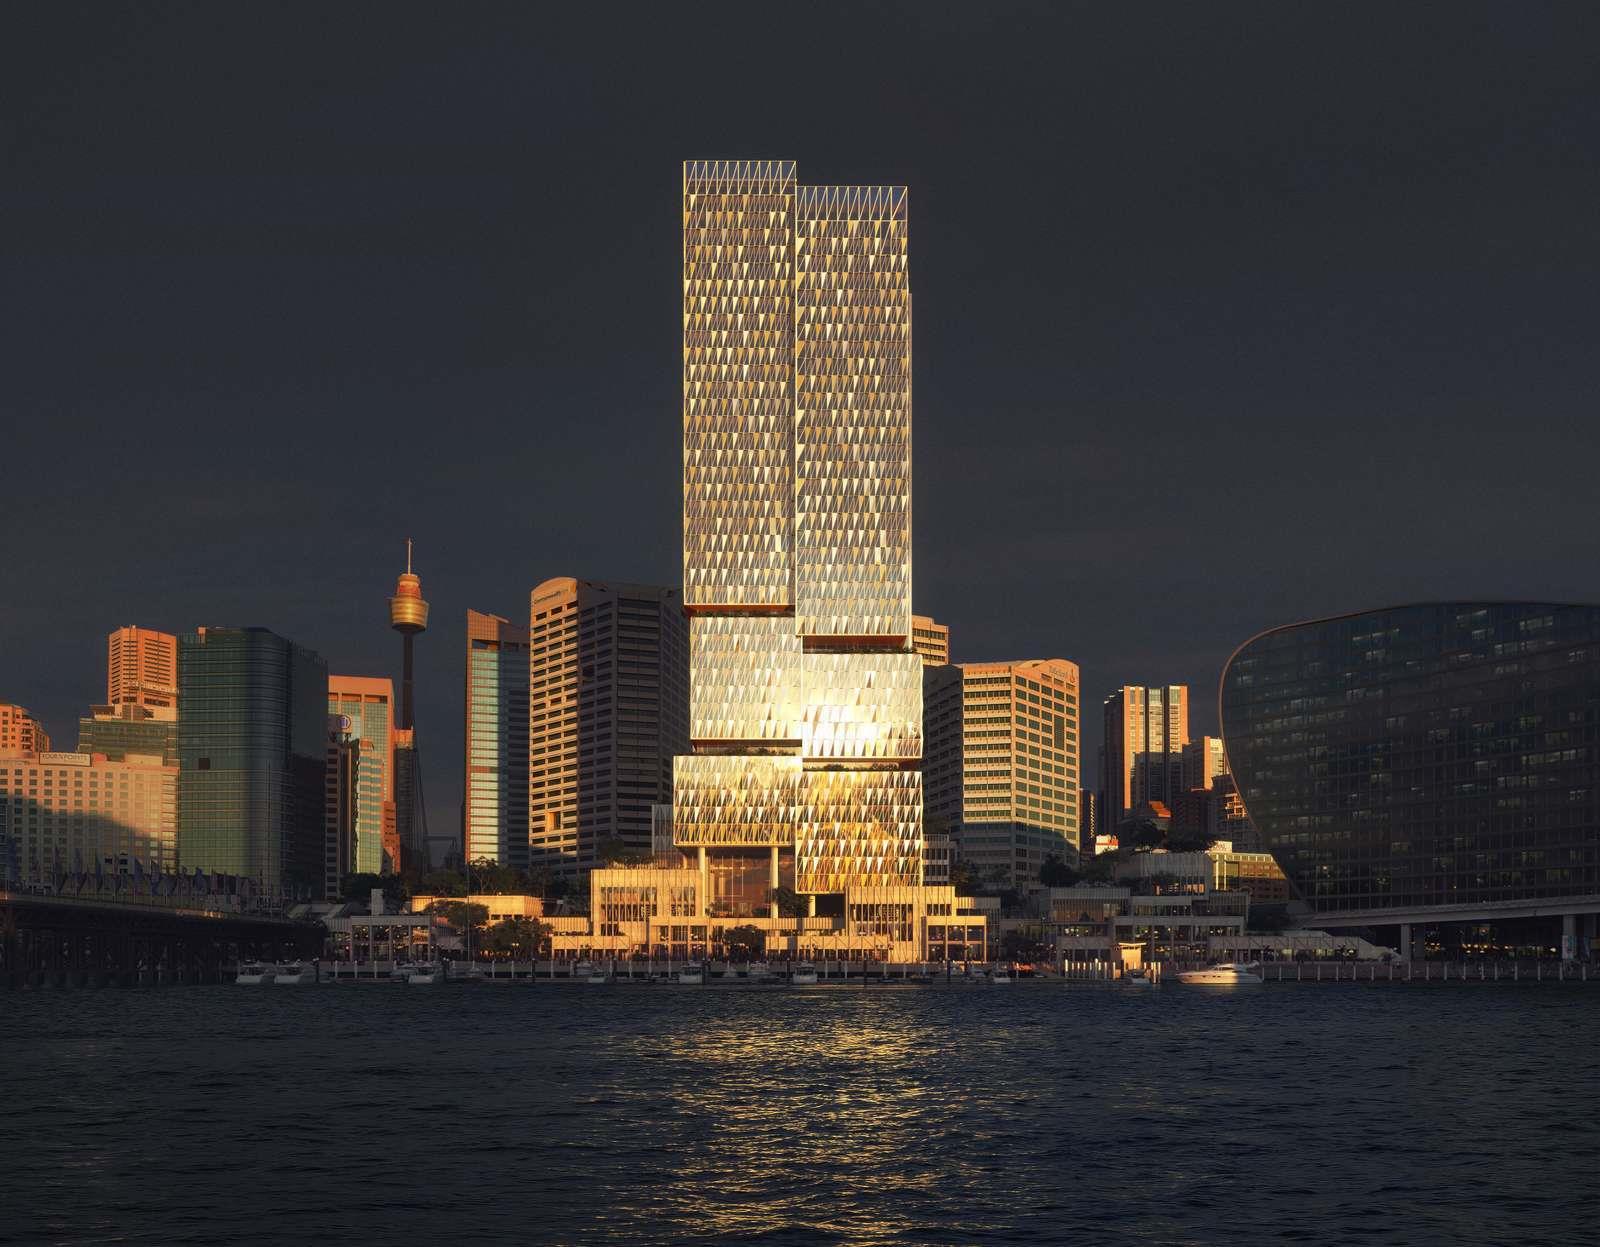 亨宁·拉森（Henning Larsen）赢得了悉尼市中心塔楼设计的国际竞赛